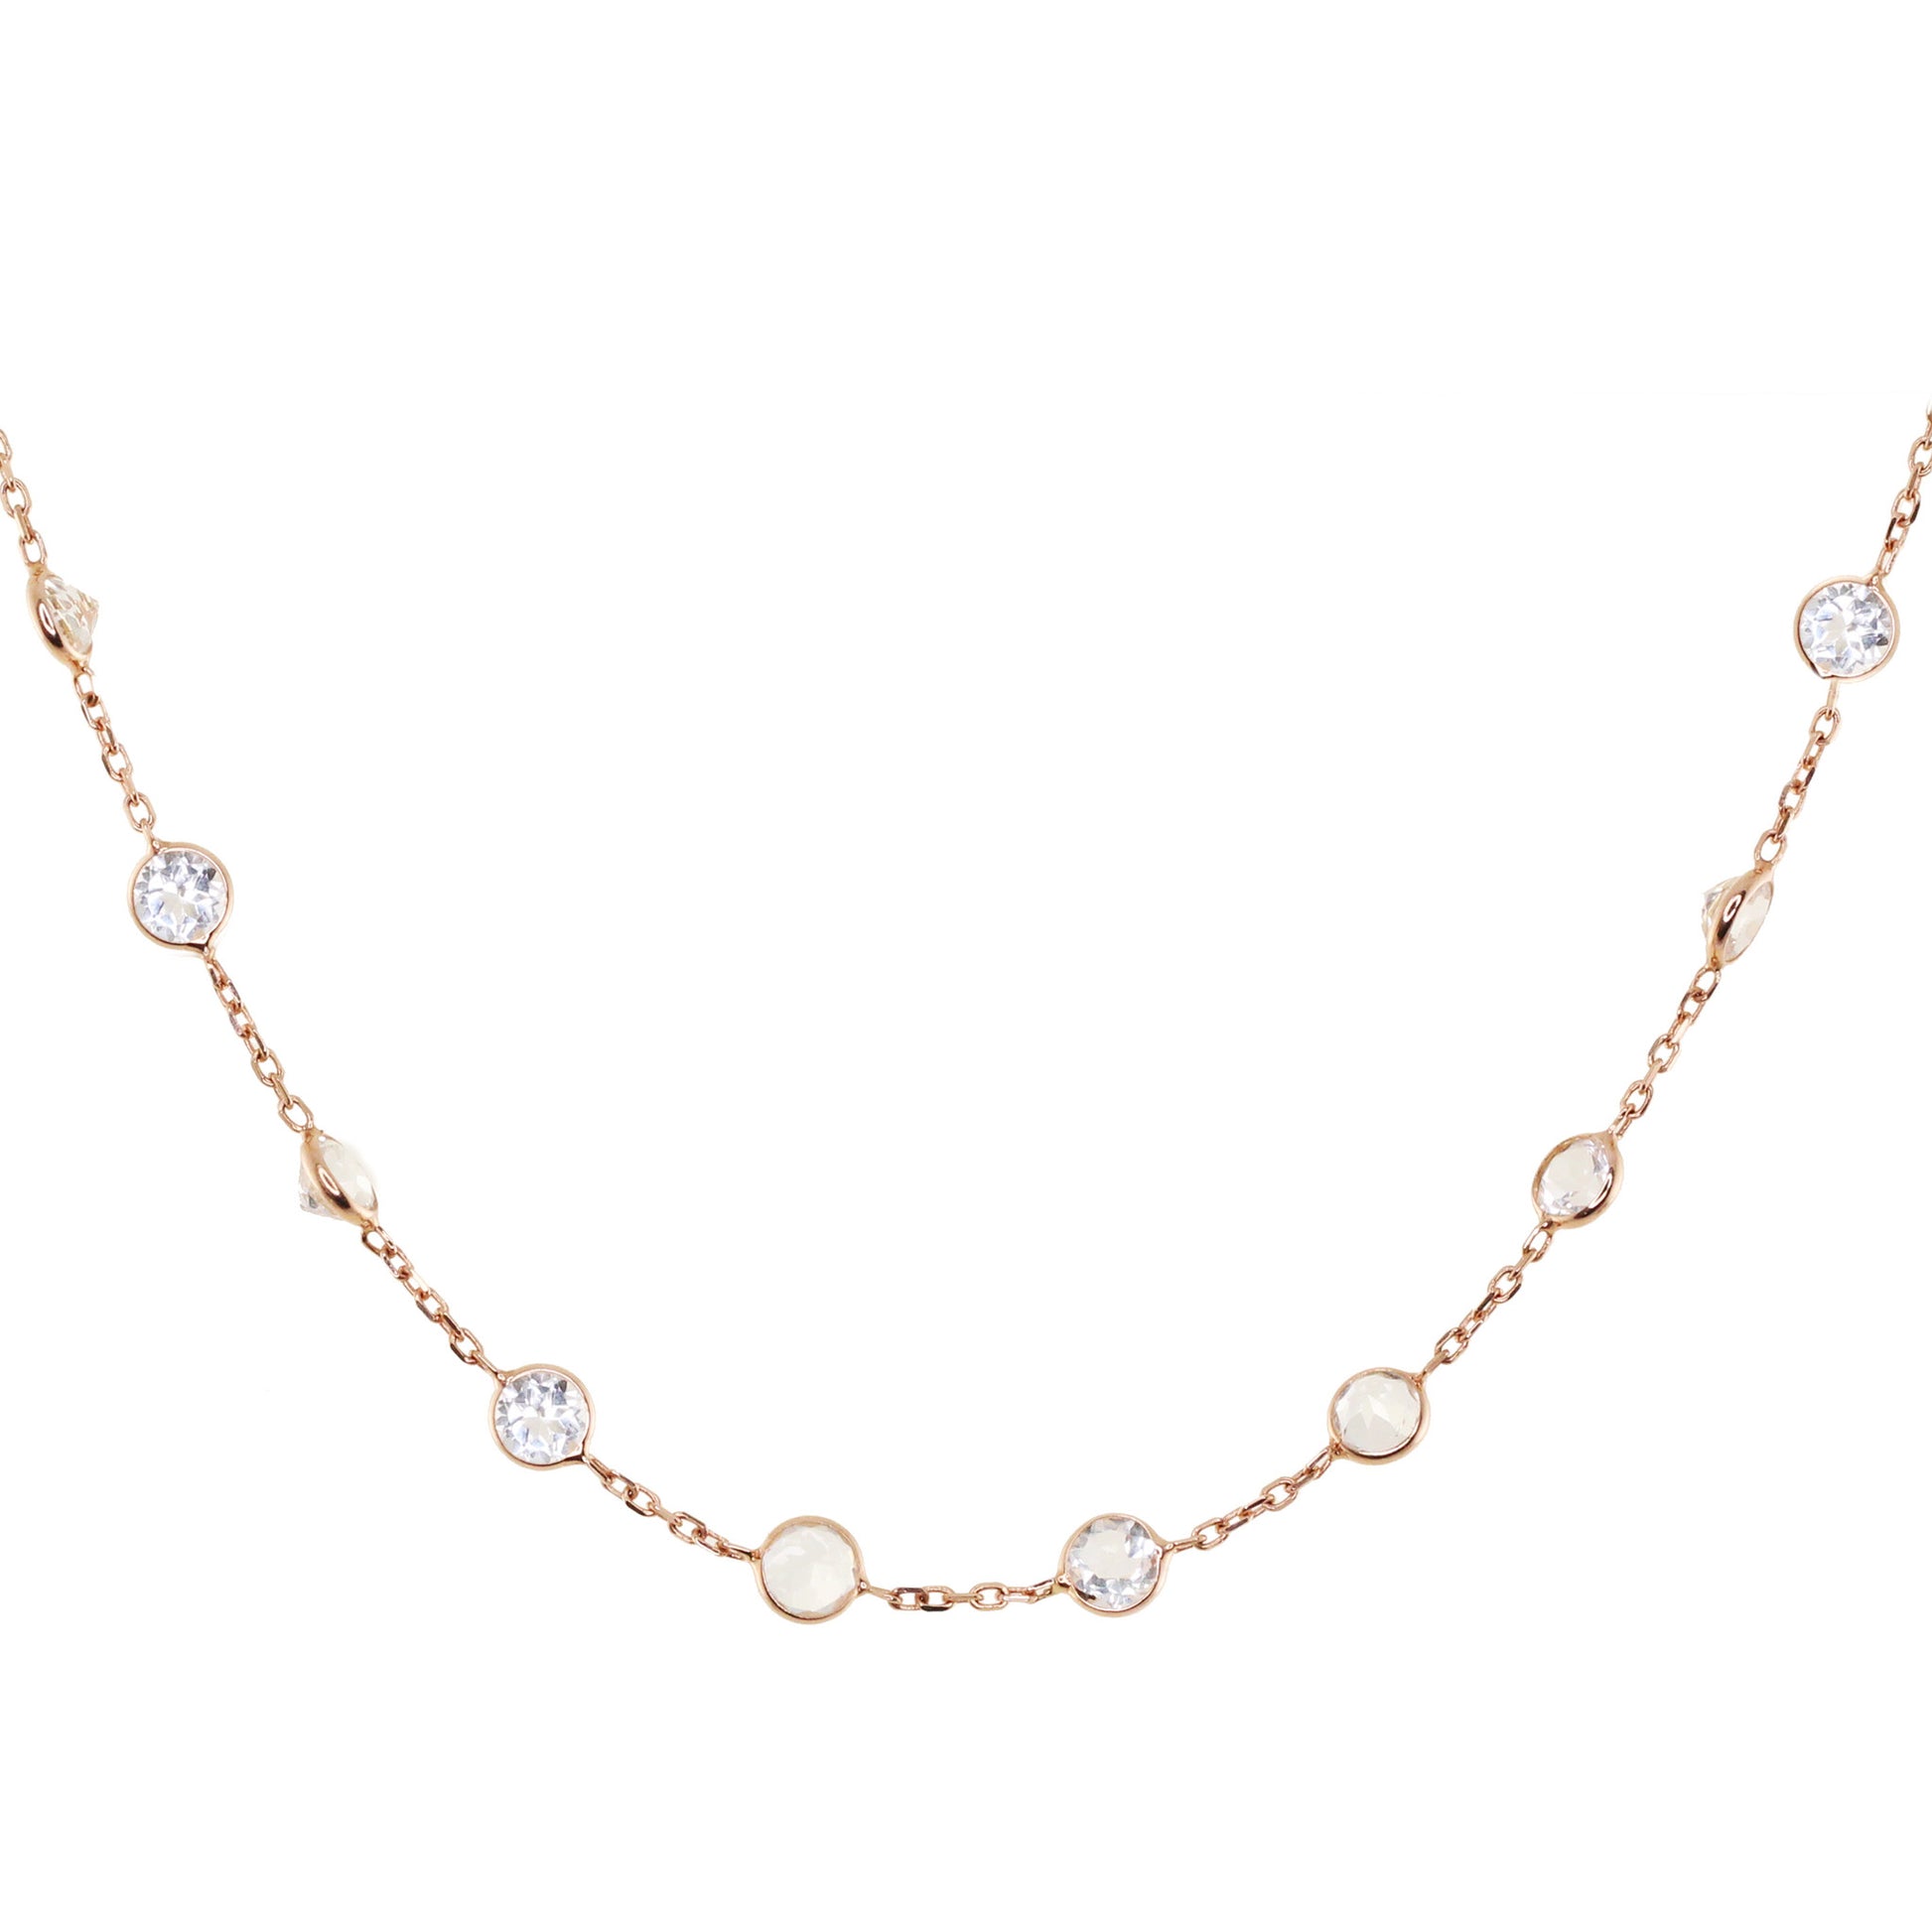 14kt gold white topaz bezel necklace - Luna Skye